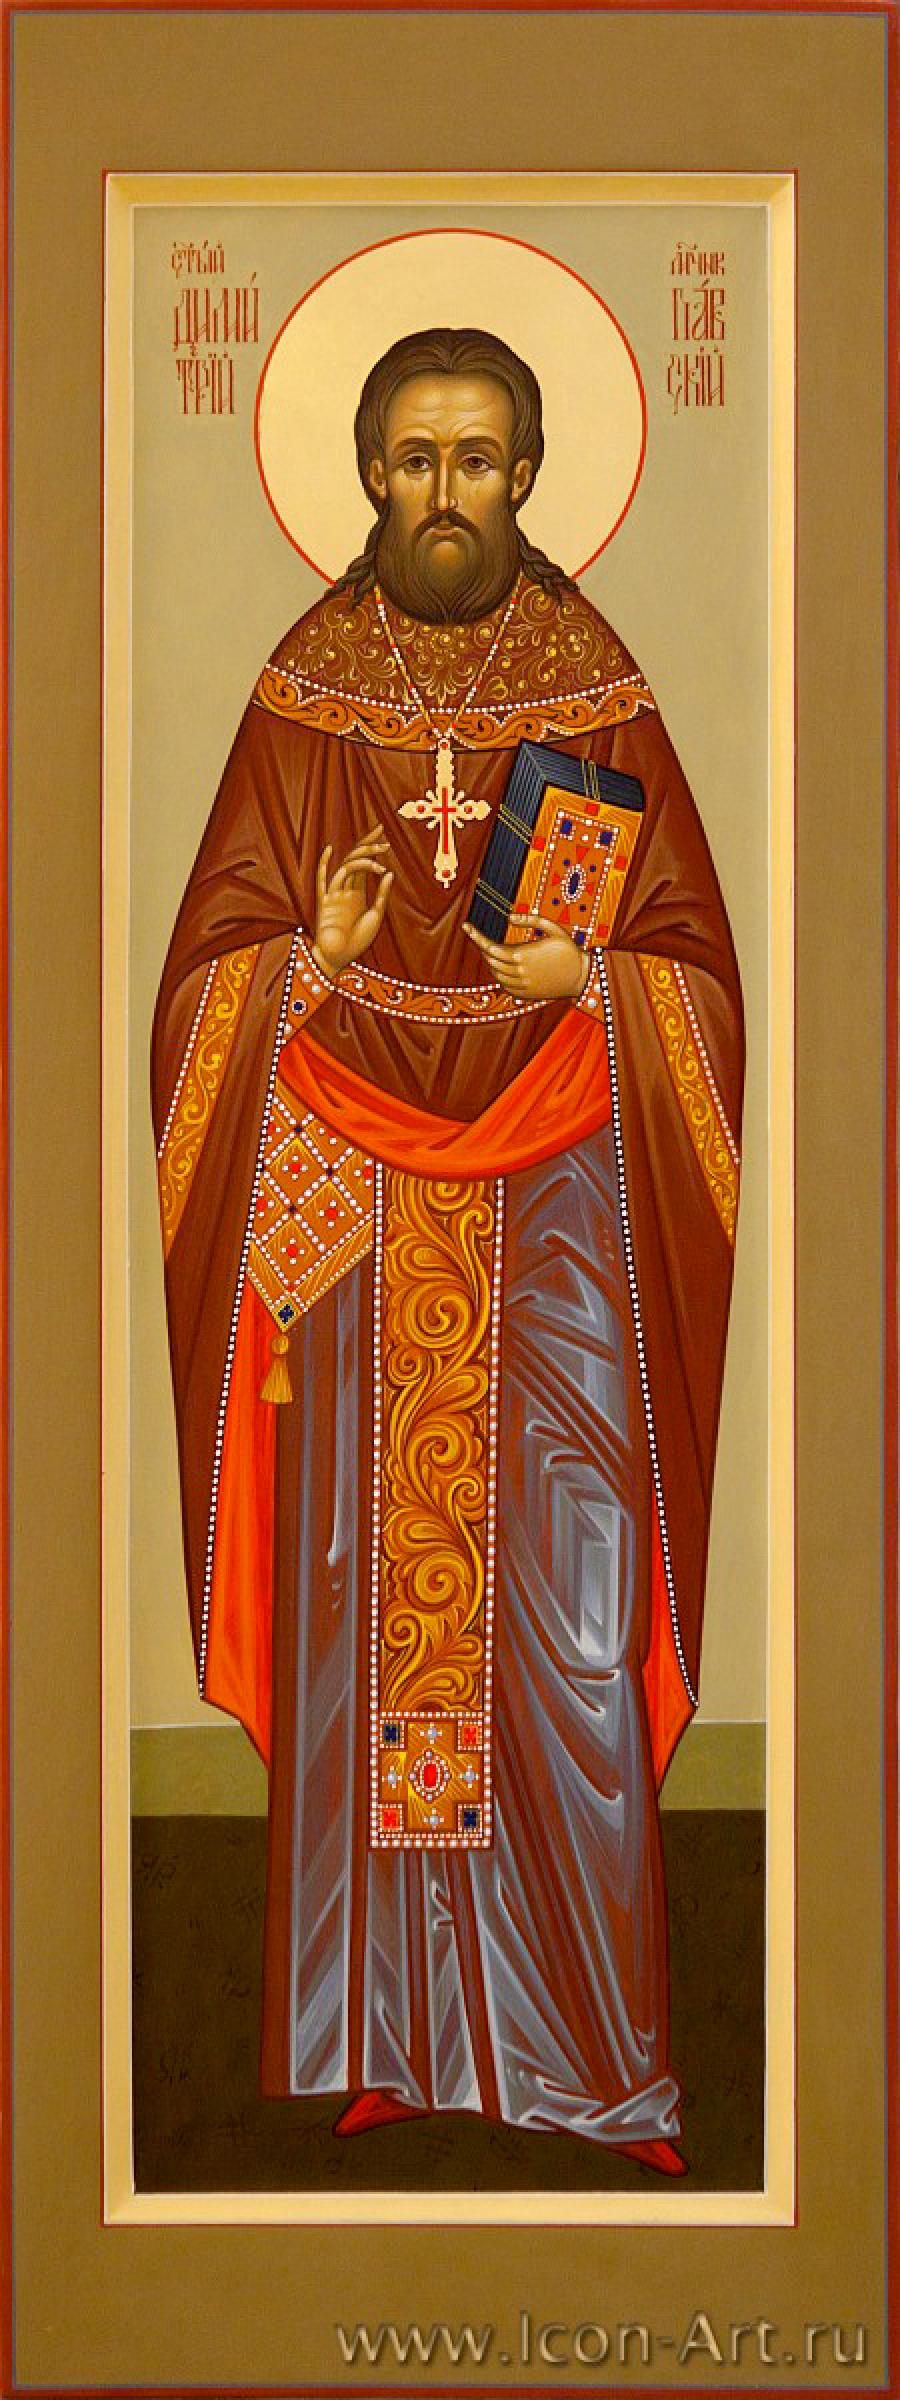 Священномученик Димитрий Павский, пресвитер